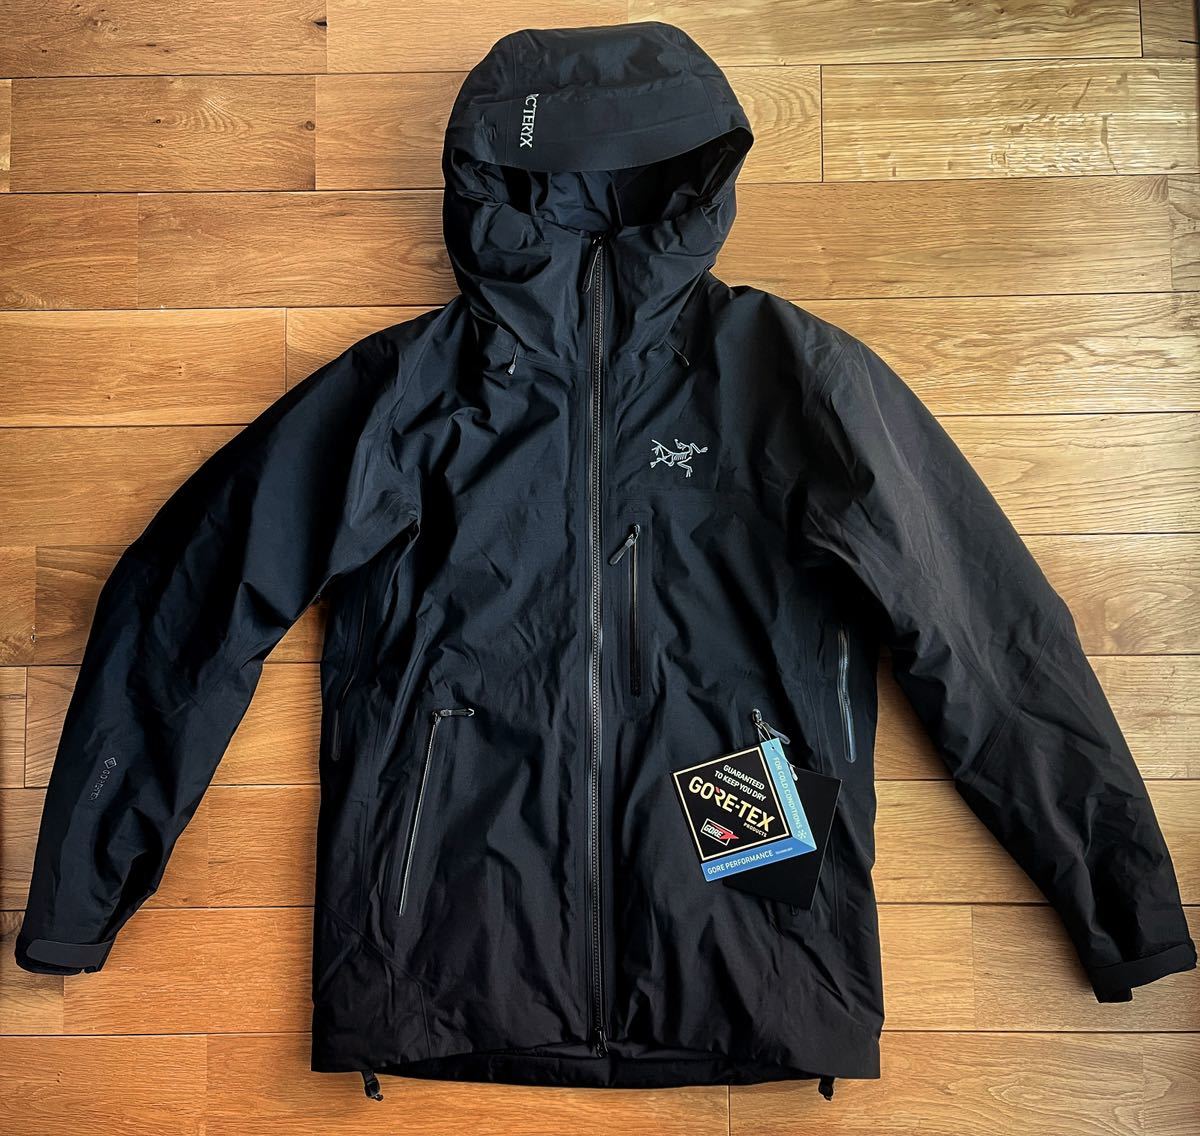 【2022 国内正規 新品】ARC'TERYX Beta Insulated Jacket Men's Black Medium アークテリクス ベータインサレーテッド ジャケット GORE-TEX